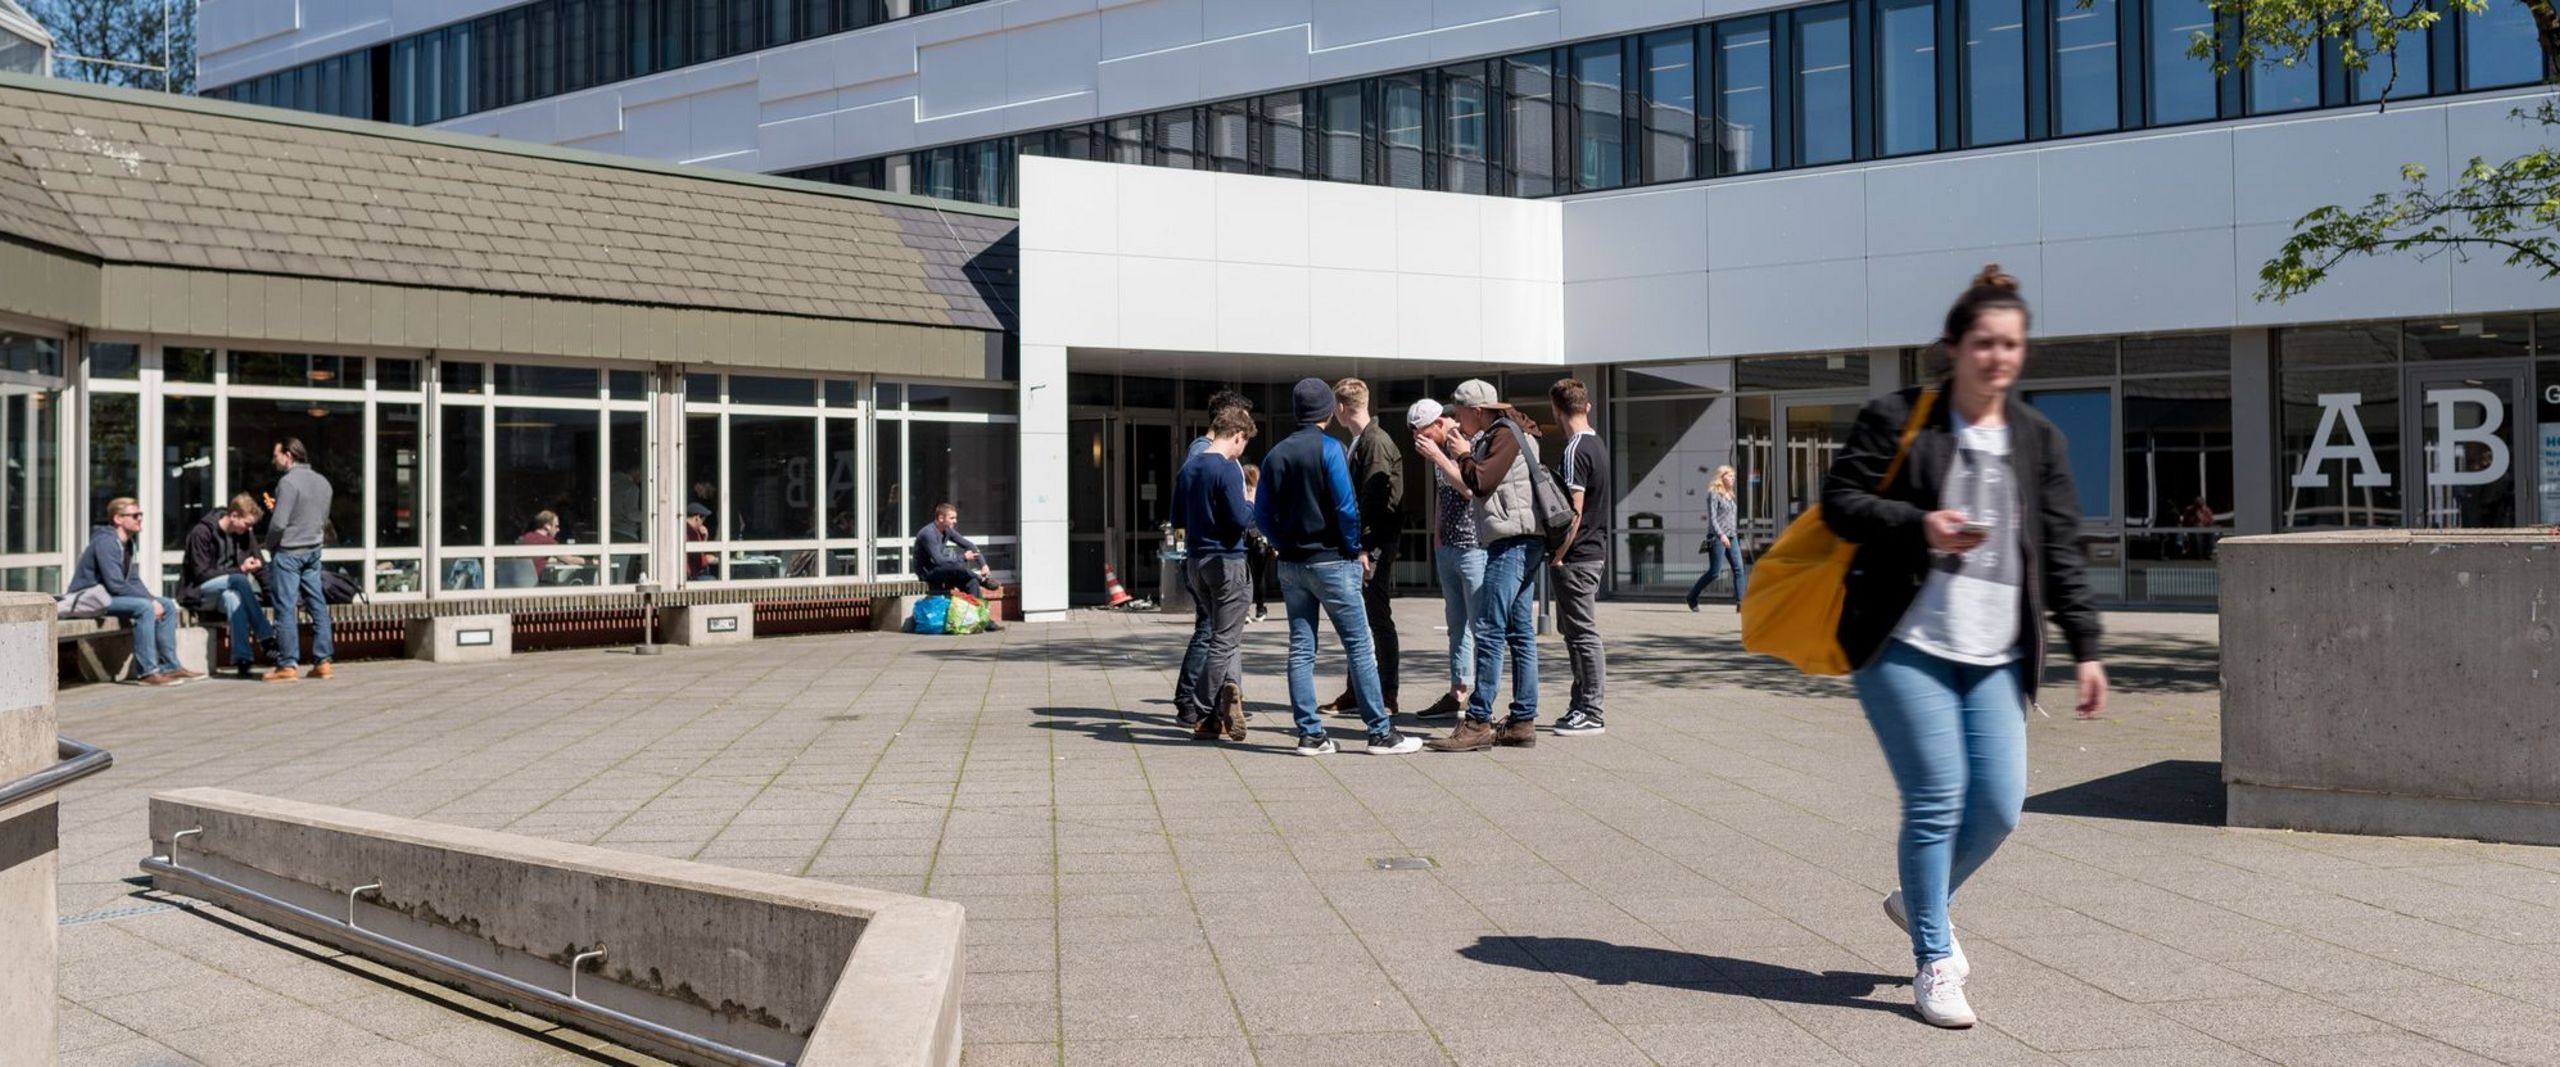 Studierende vor dem Eingang des AB-Gebäudes auf dem Campus Neustadtswall.